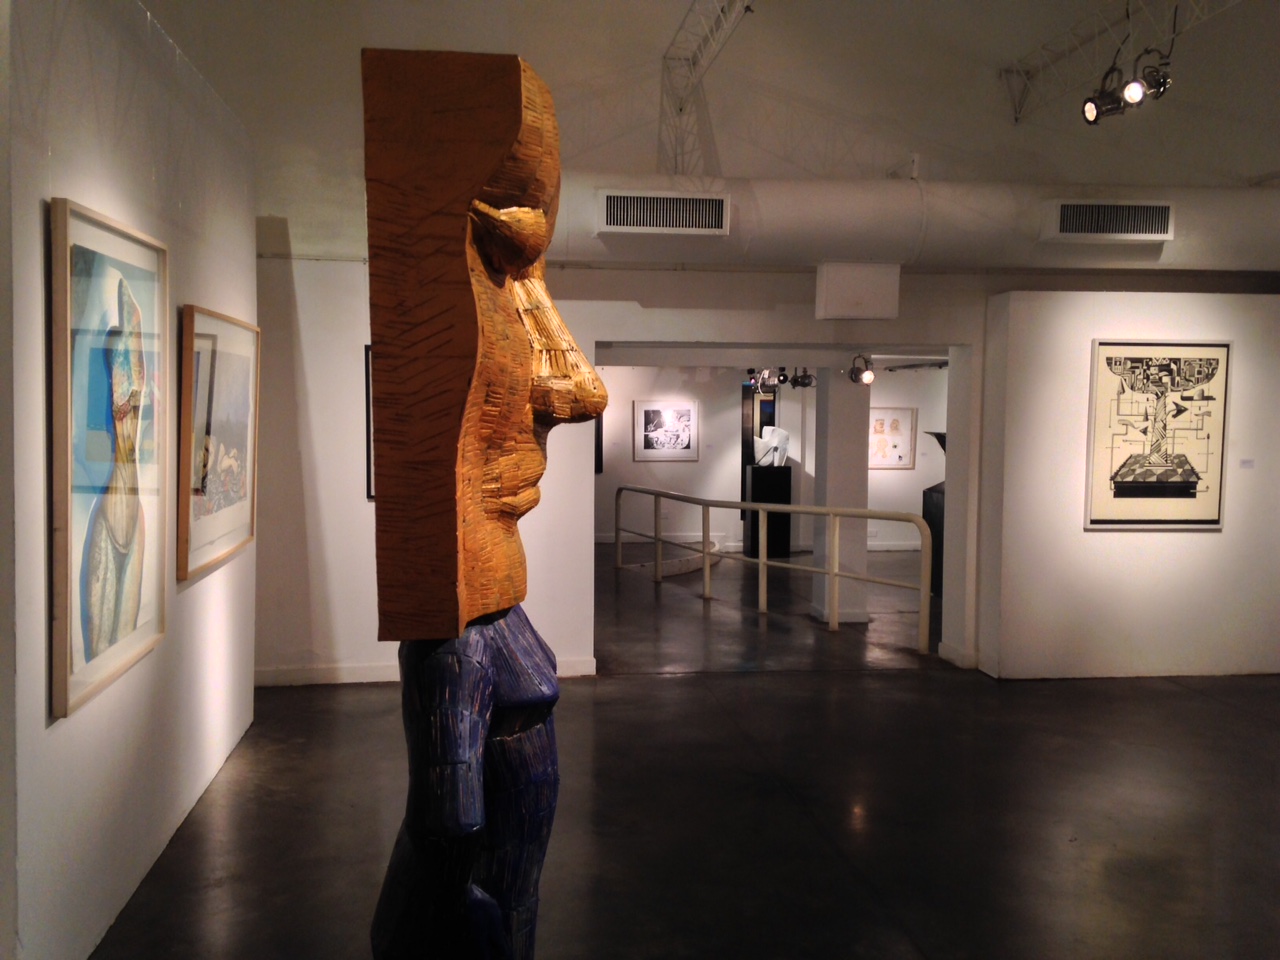 Grabado, Monocopia y Escultura en el 60º Salón de Artes Plásticas “Manuel Belgrano”. A partir del 30 de abril